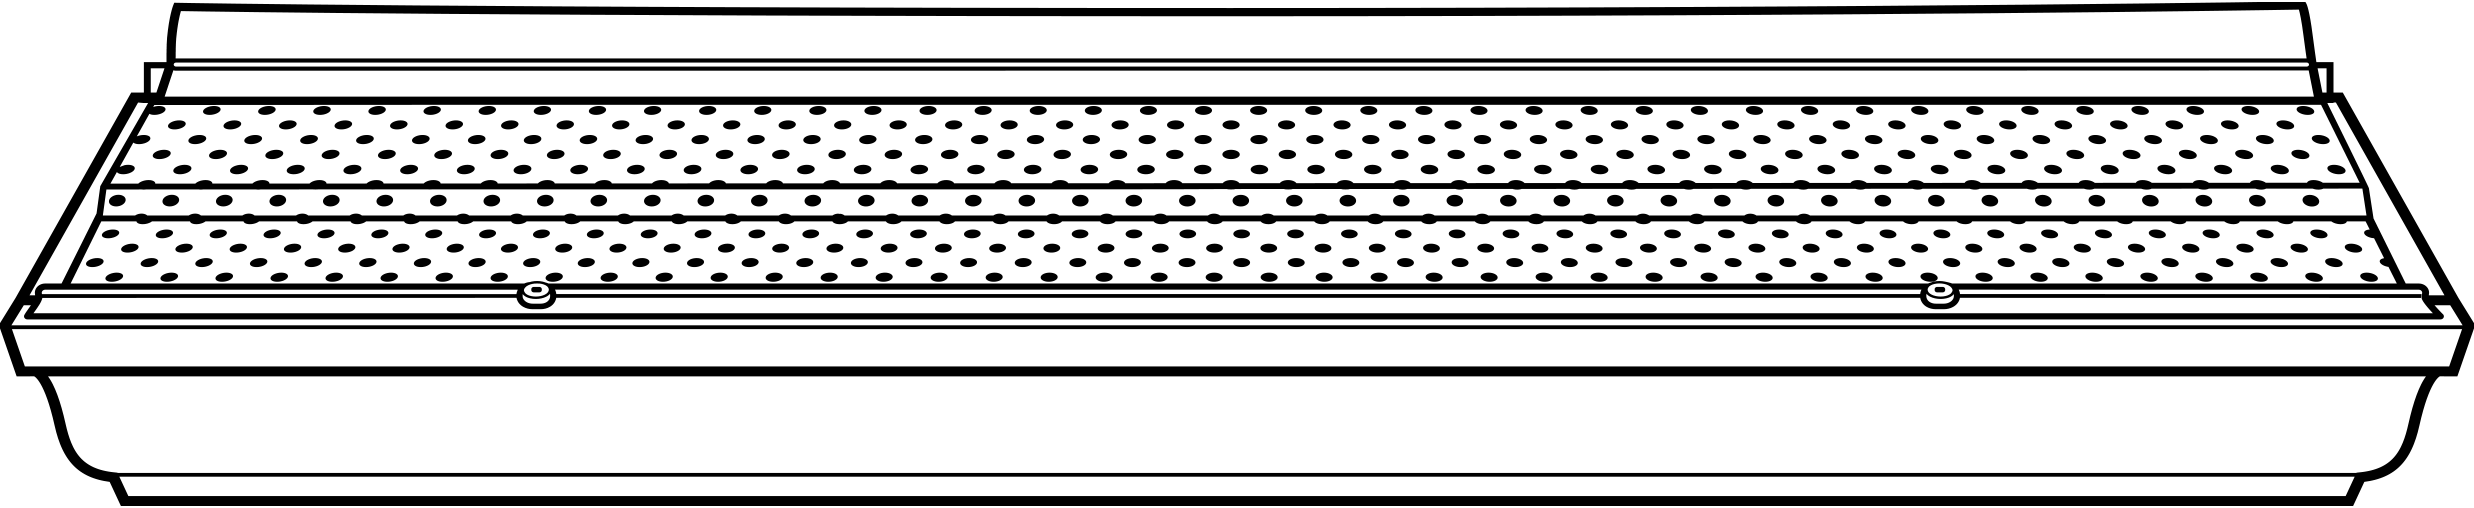 Diagram of Alu-Rex eavstrough system